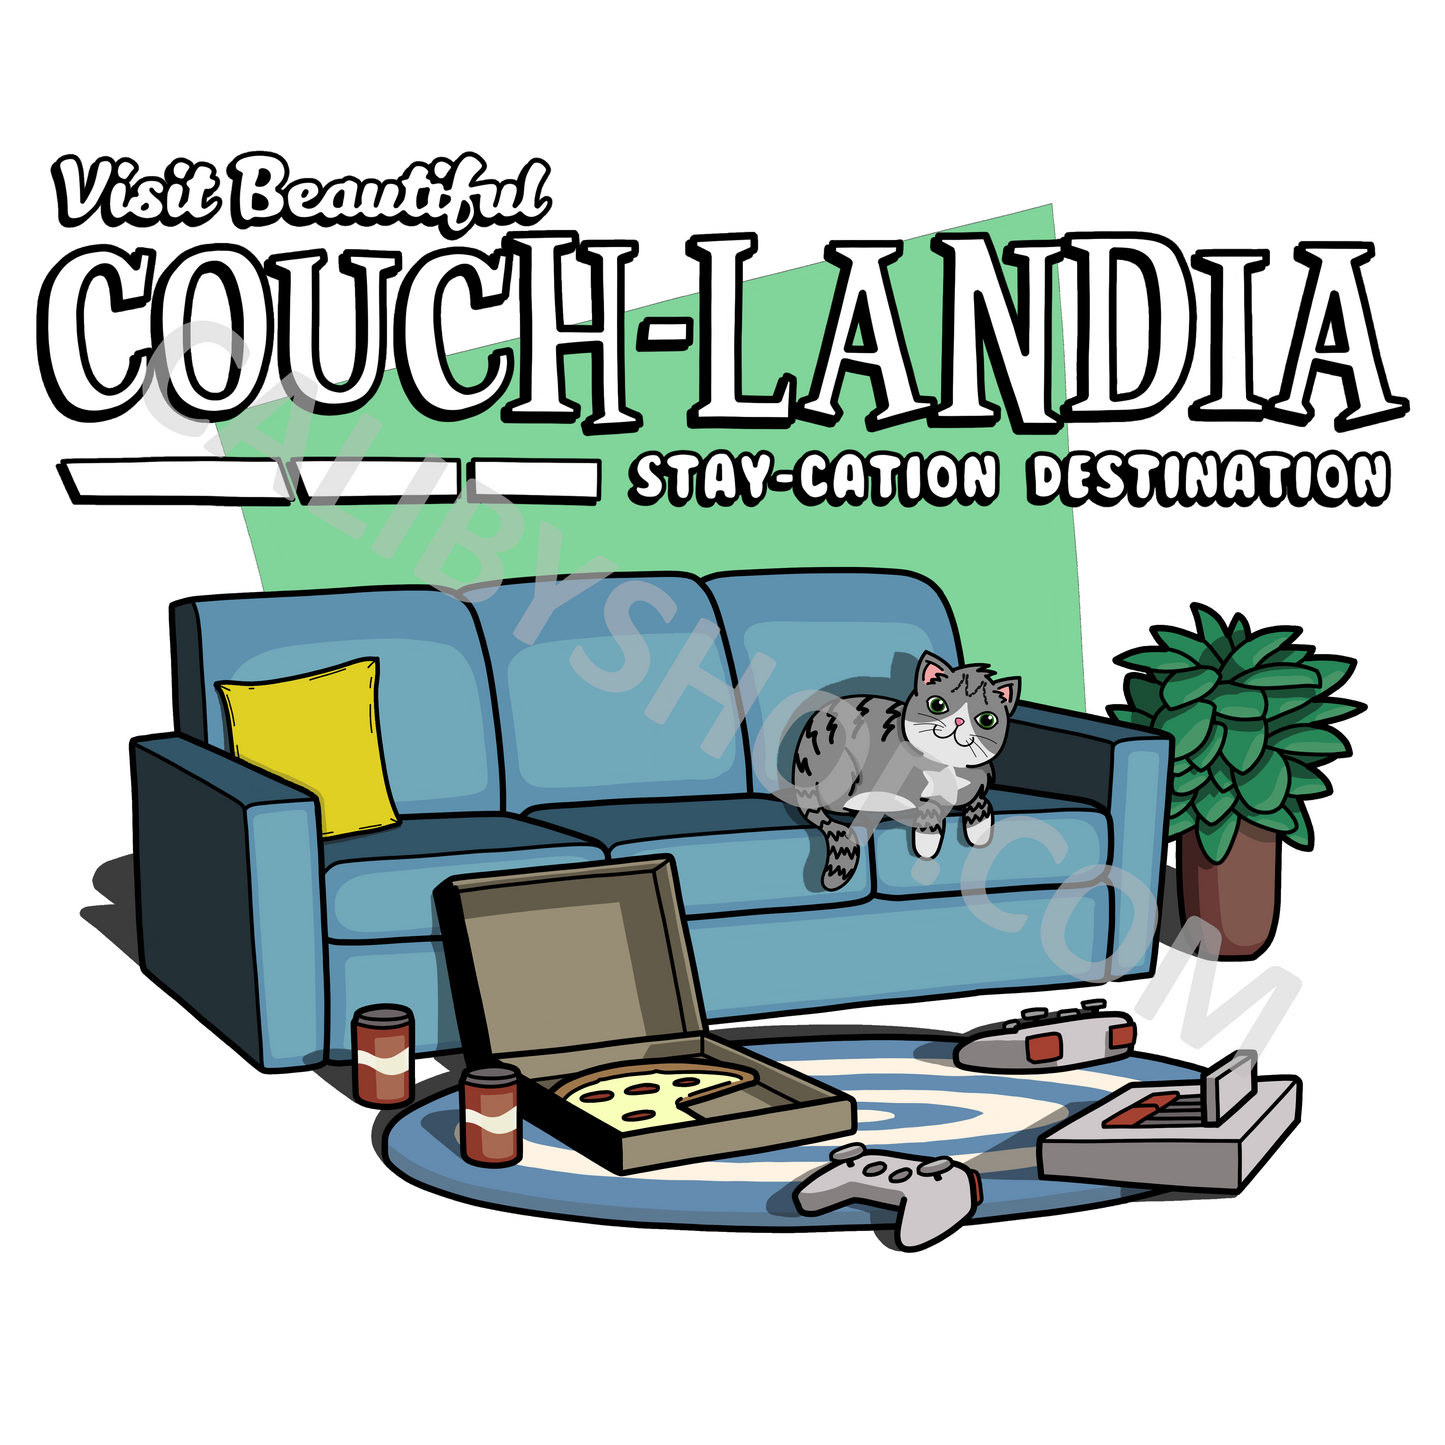 Men's T-Shirt "Visit Couchlandia Staycation Destination"(Dark Heather/Gamer Cat Version)